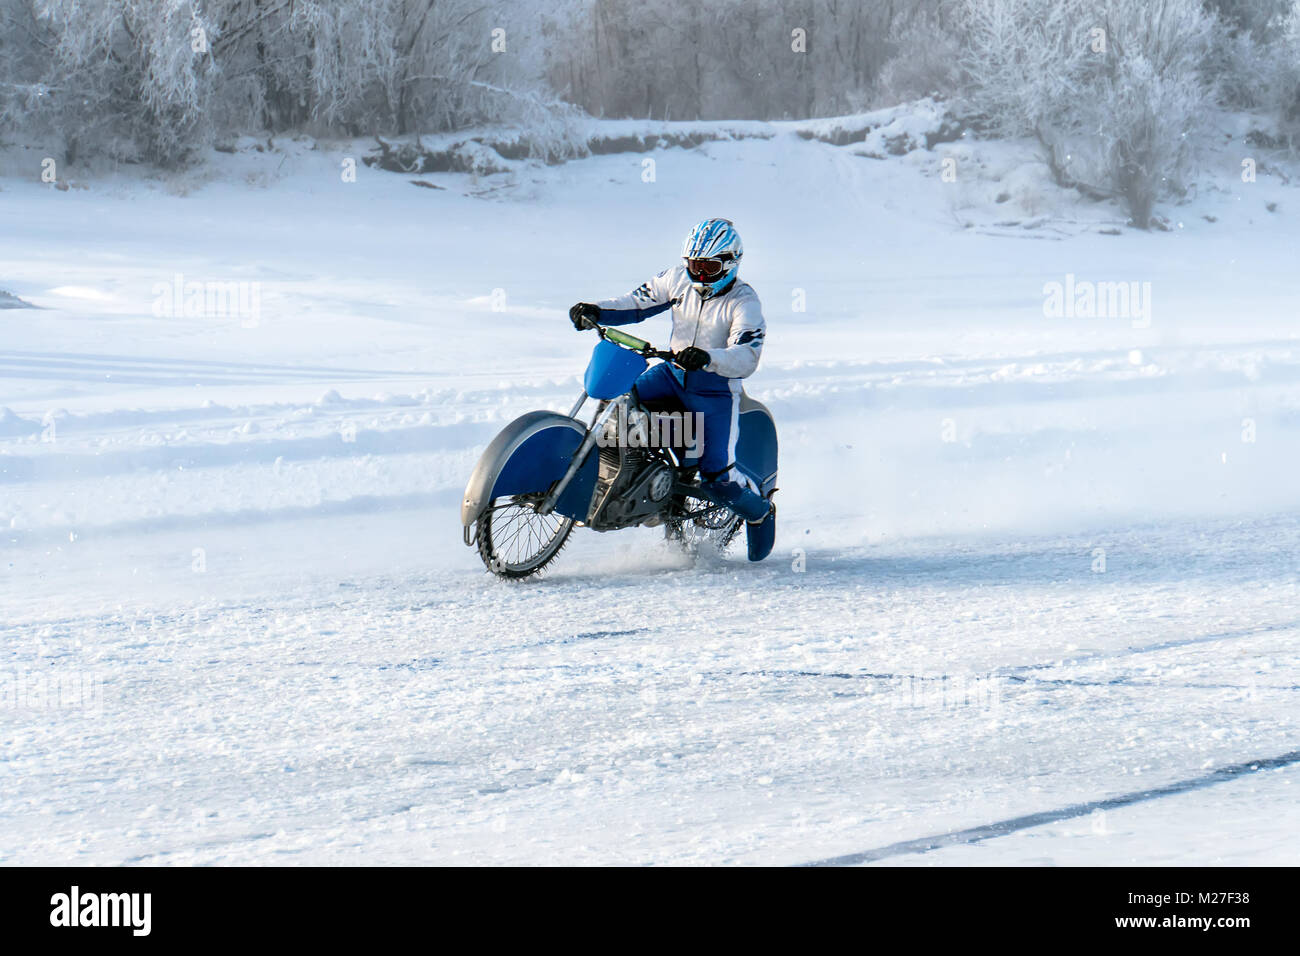 Motorrad auf Spikereifen. Winter Speedway. Extreme Bike Race im Winter.  Motorrad auf dem Eis der gefrorenen Baikalsee. Motorradfahrer schützende ge  Stockfotografie - Alamy